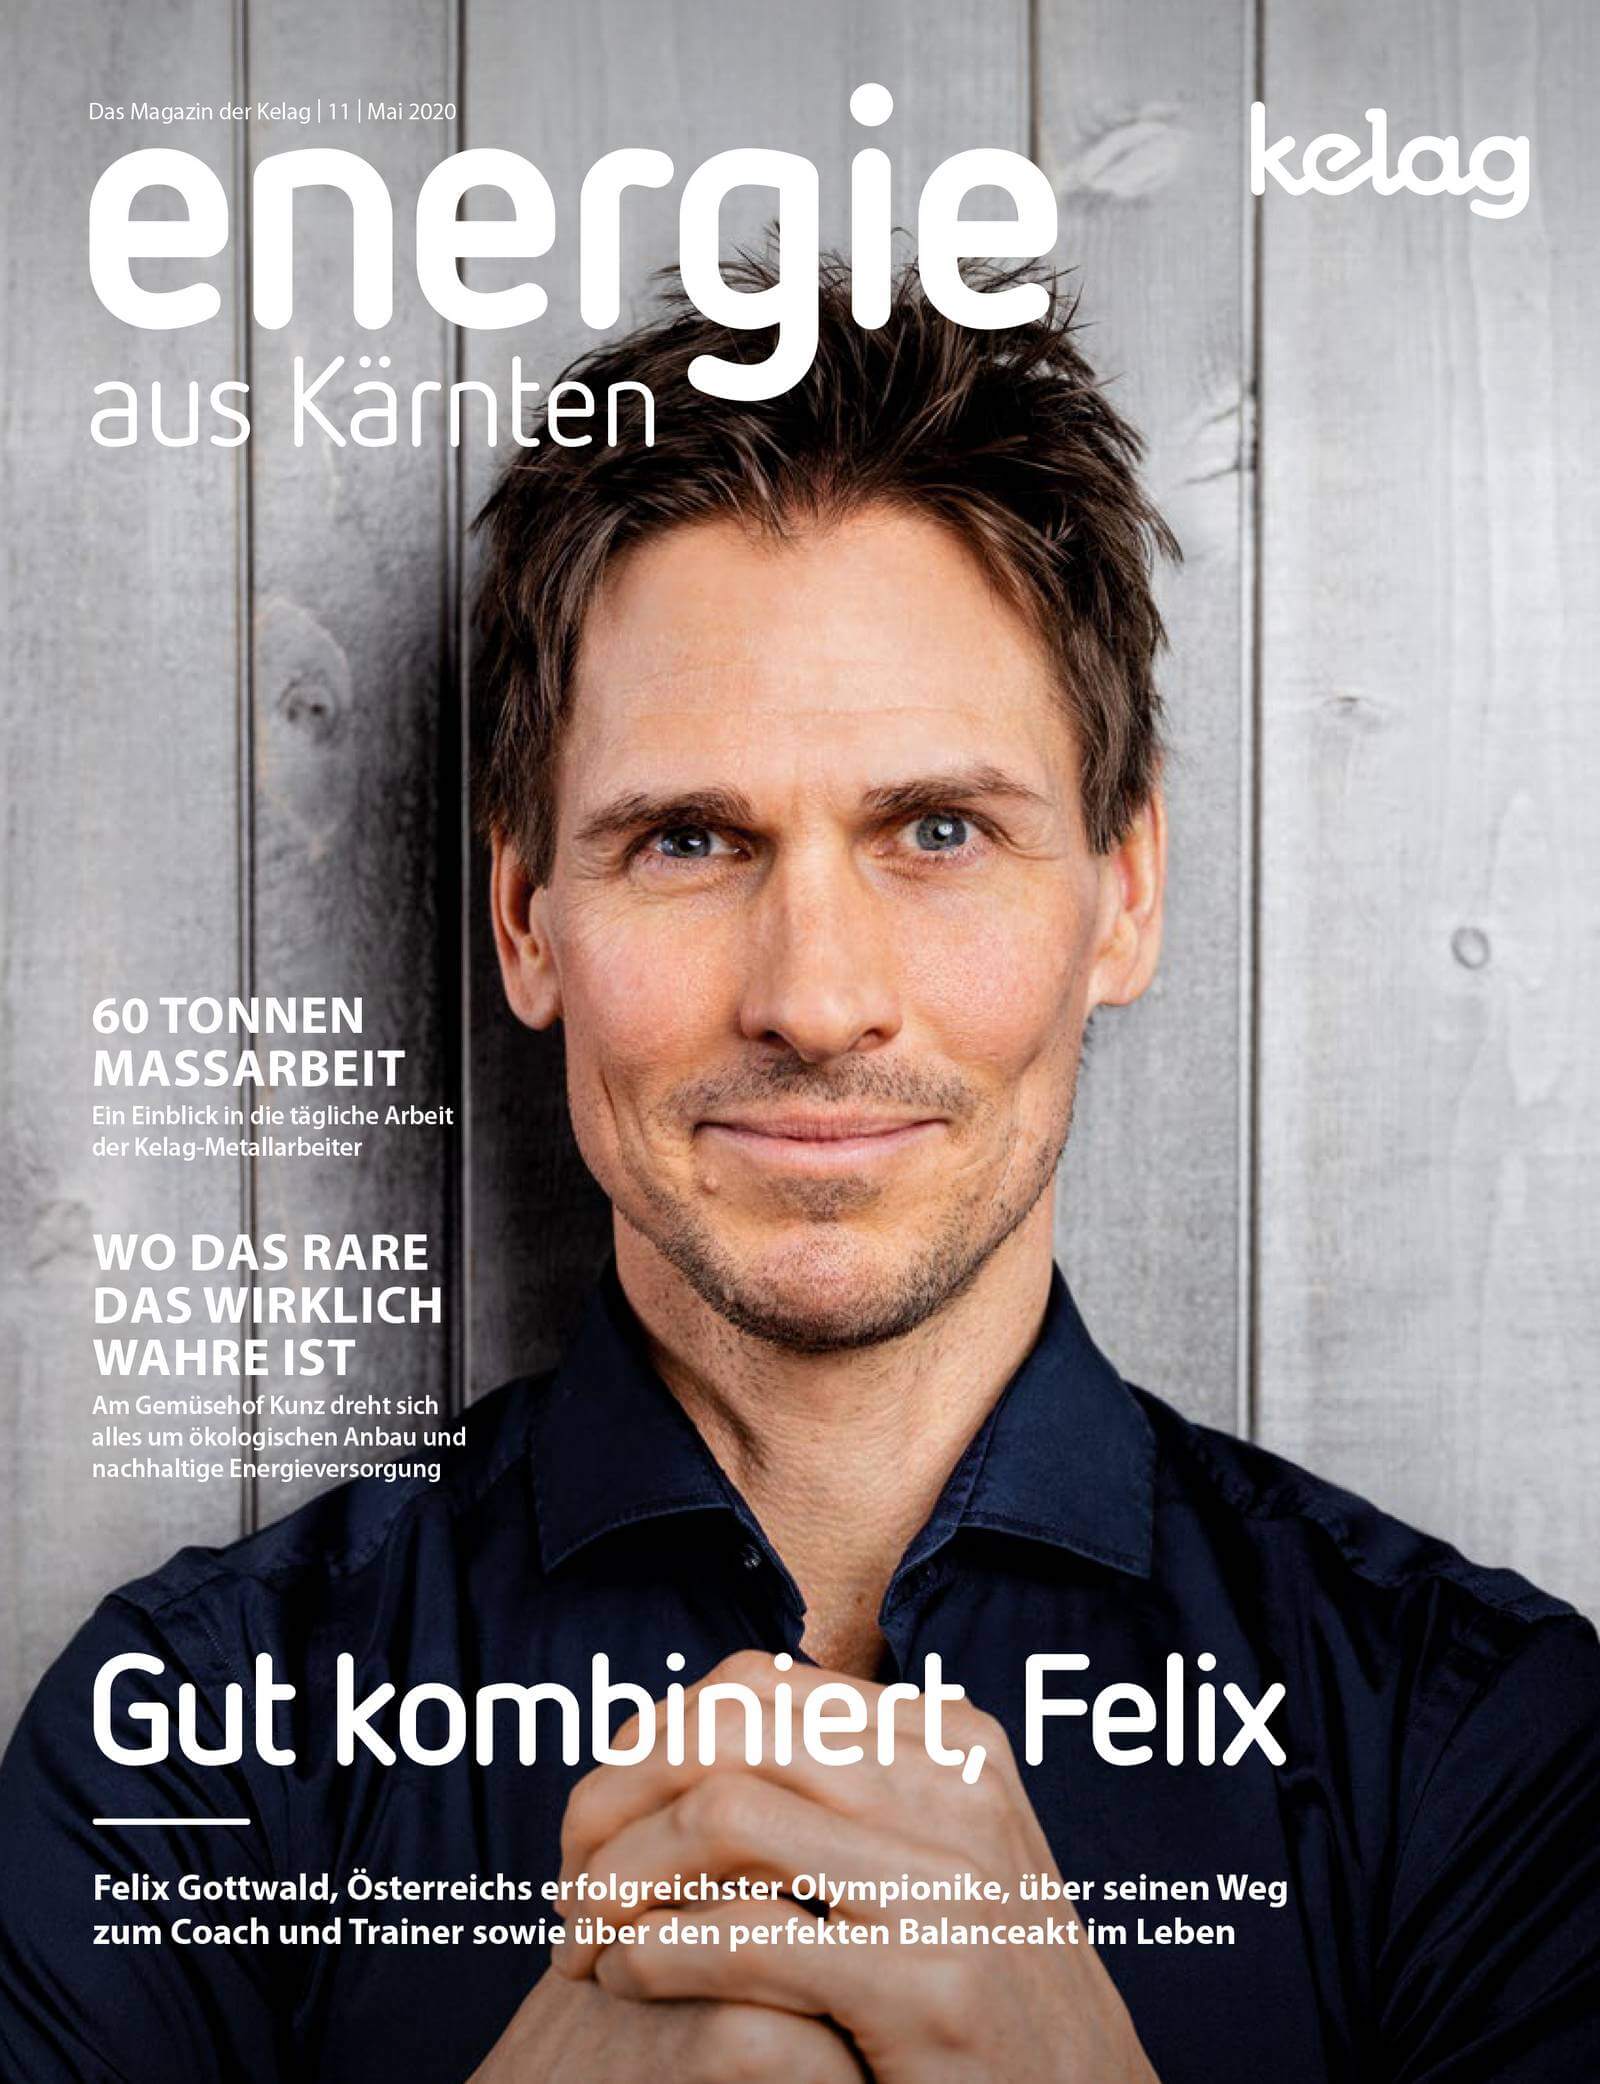 Cover Foto von Felix Gottwald für das Magazin Energie aus Kärnten